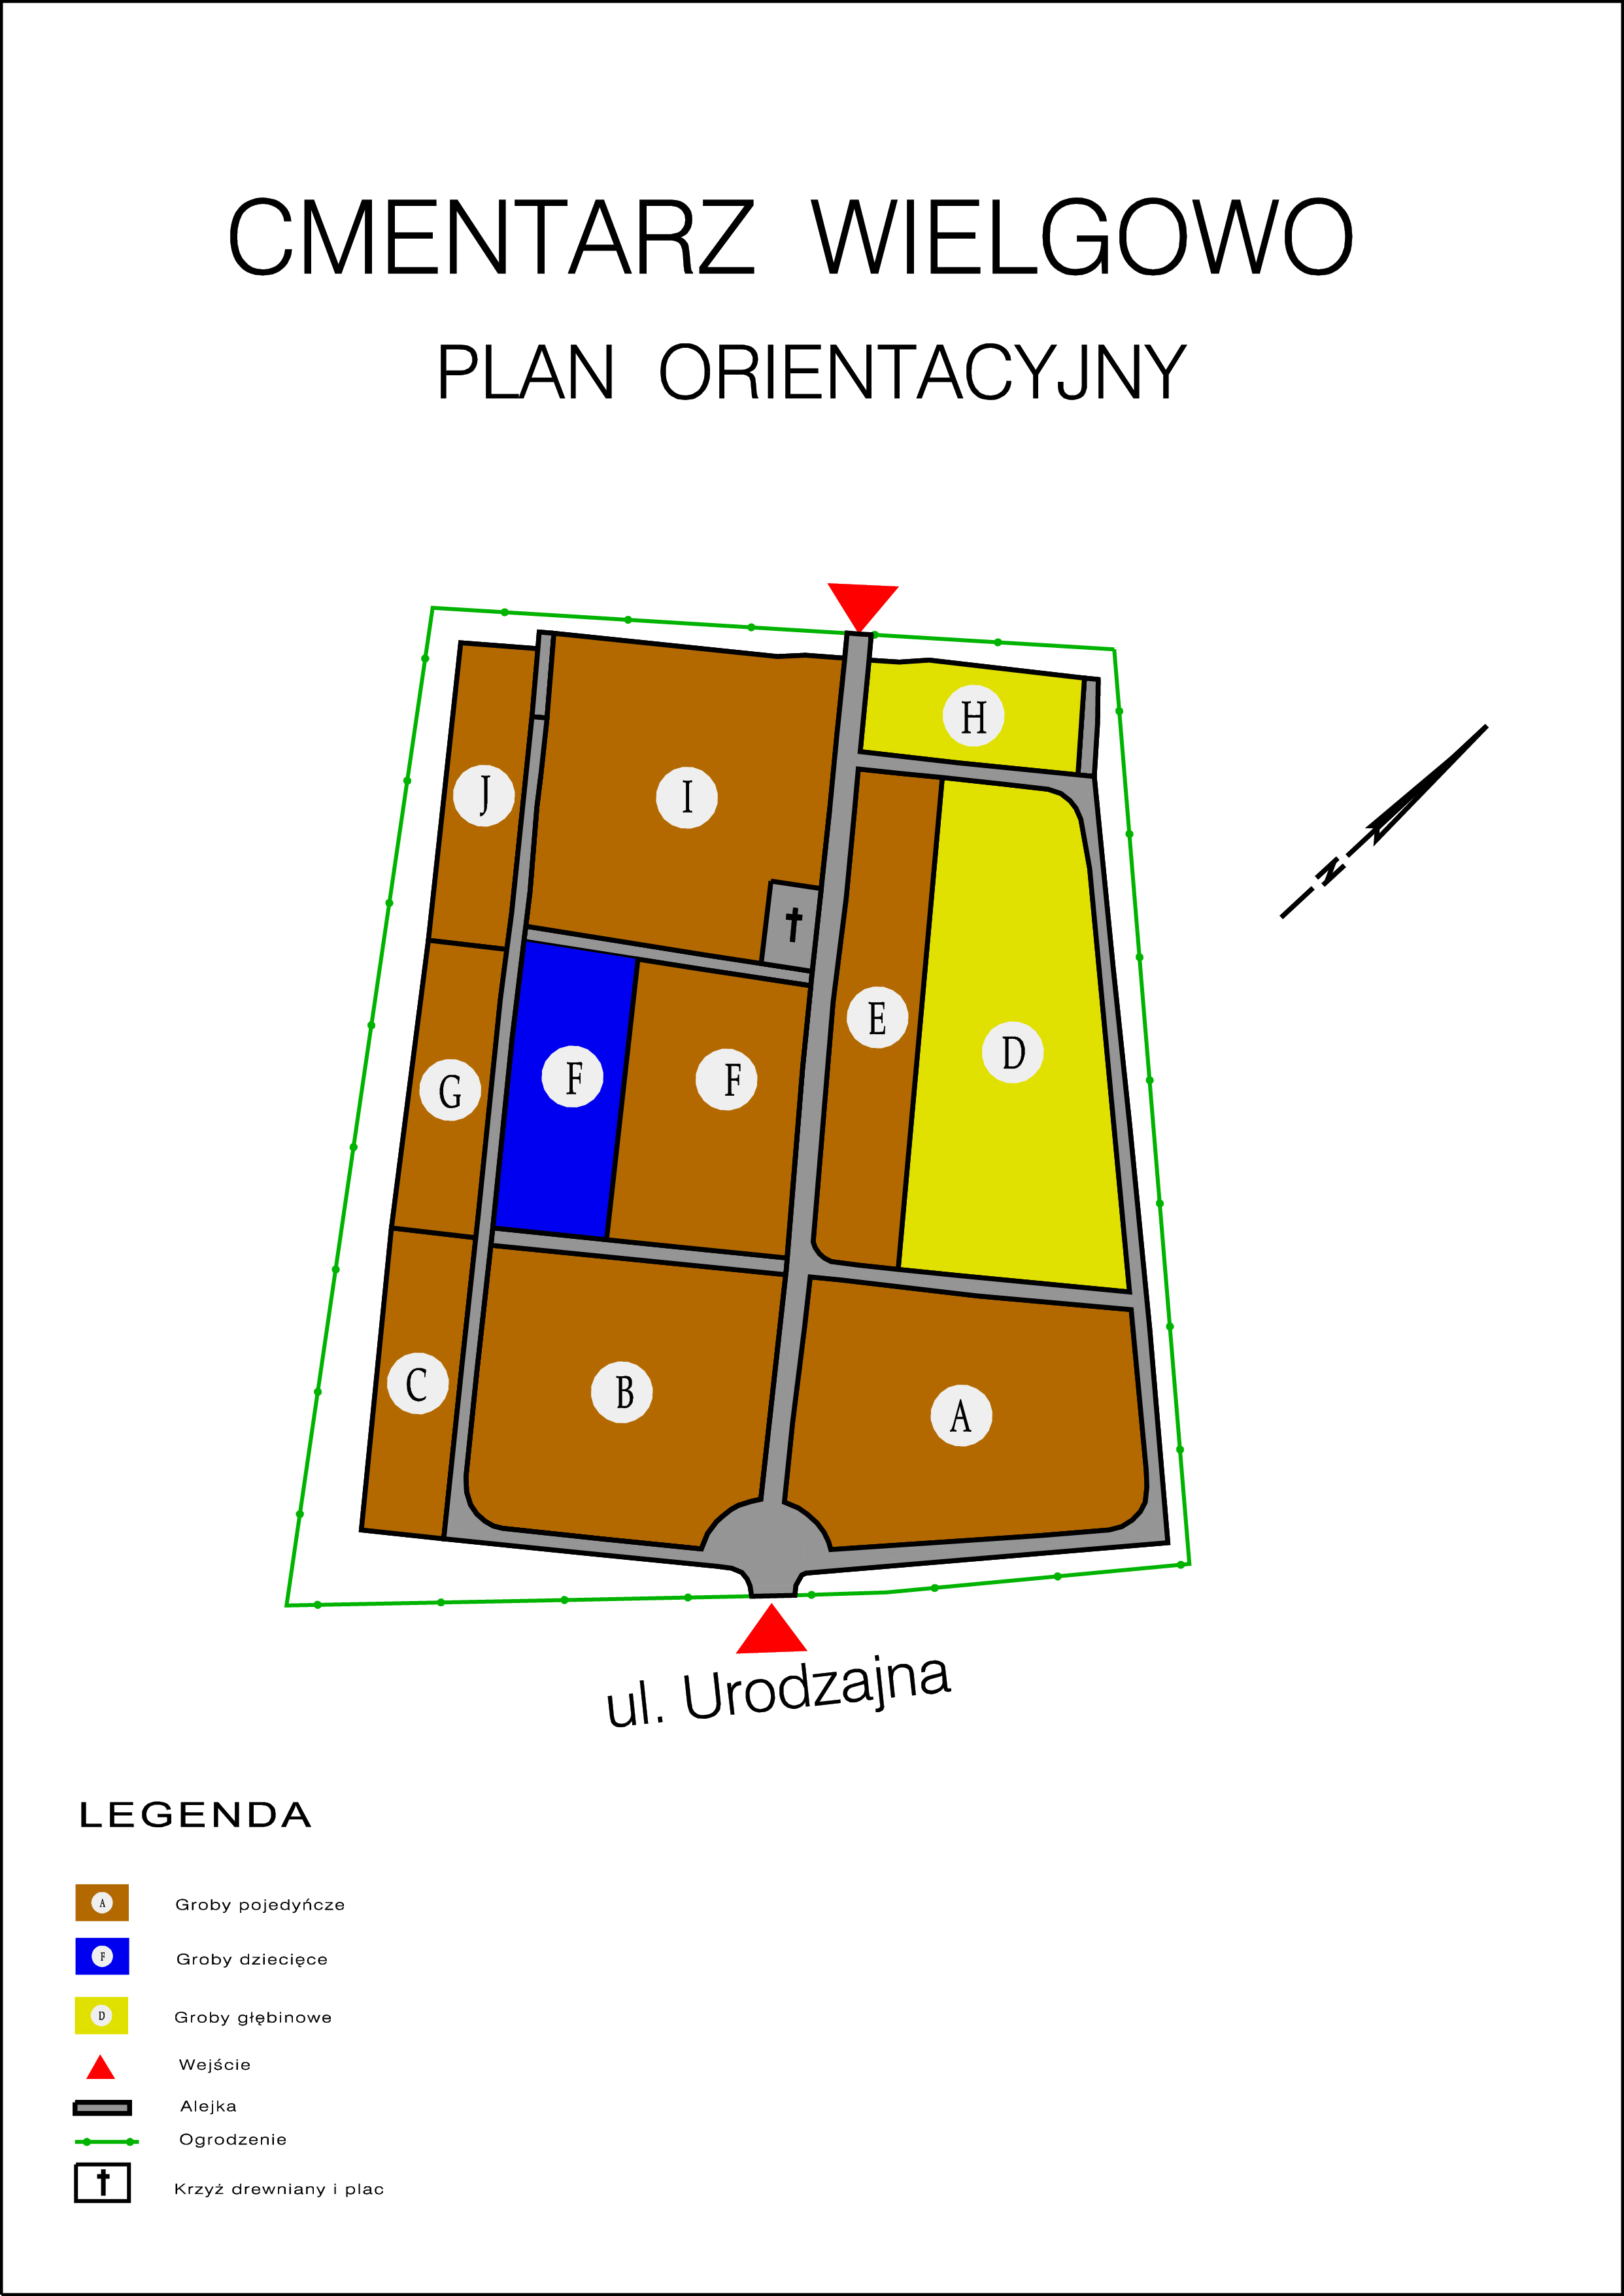 plan_orientacyjny_wielgowo-01.jpg